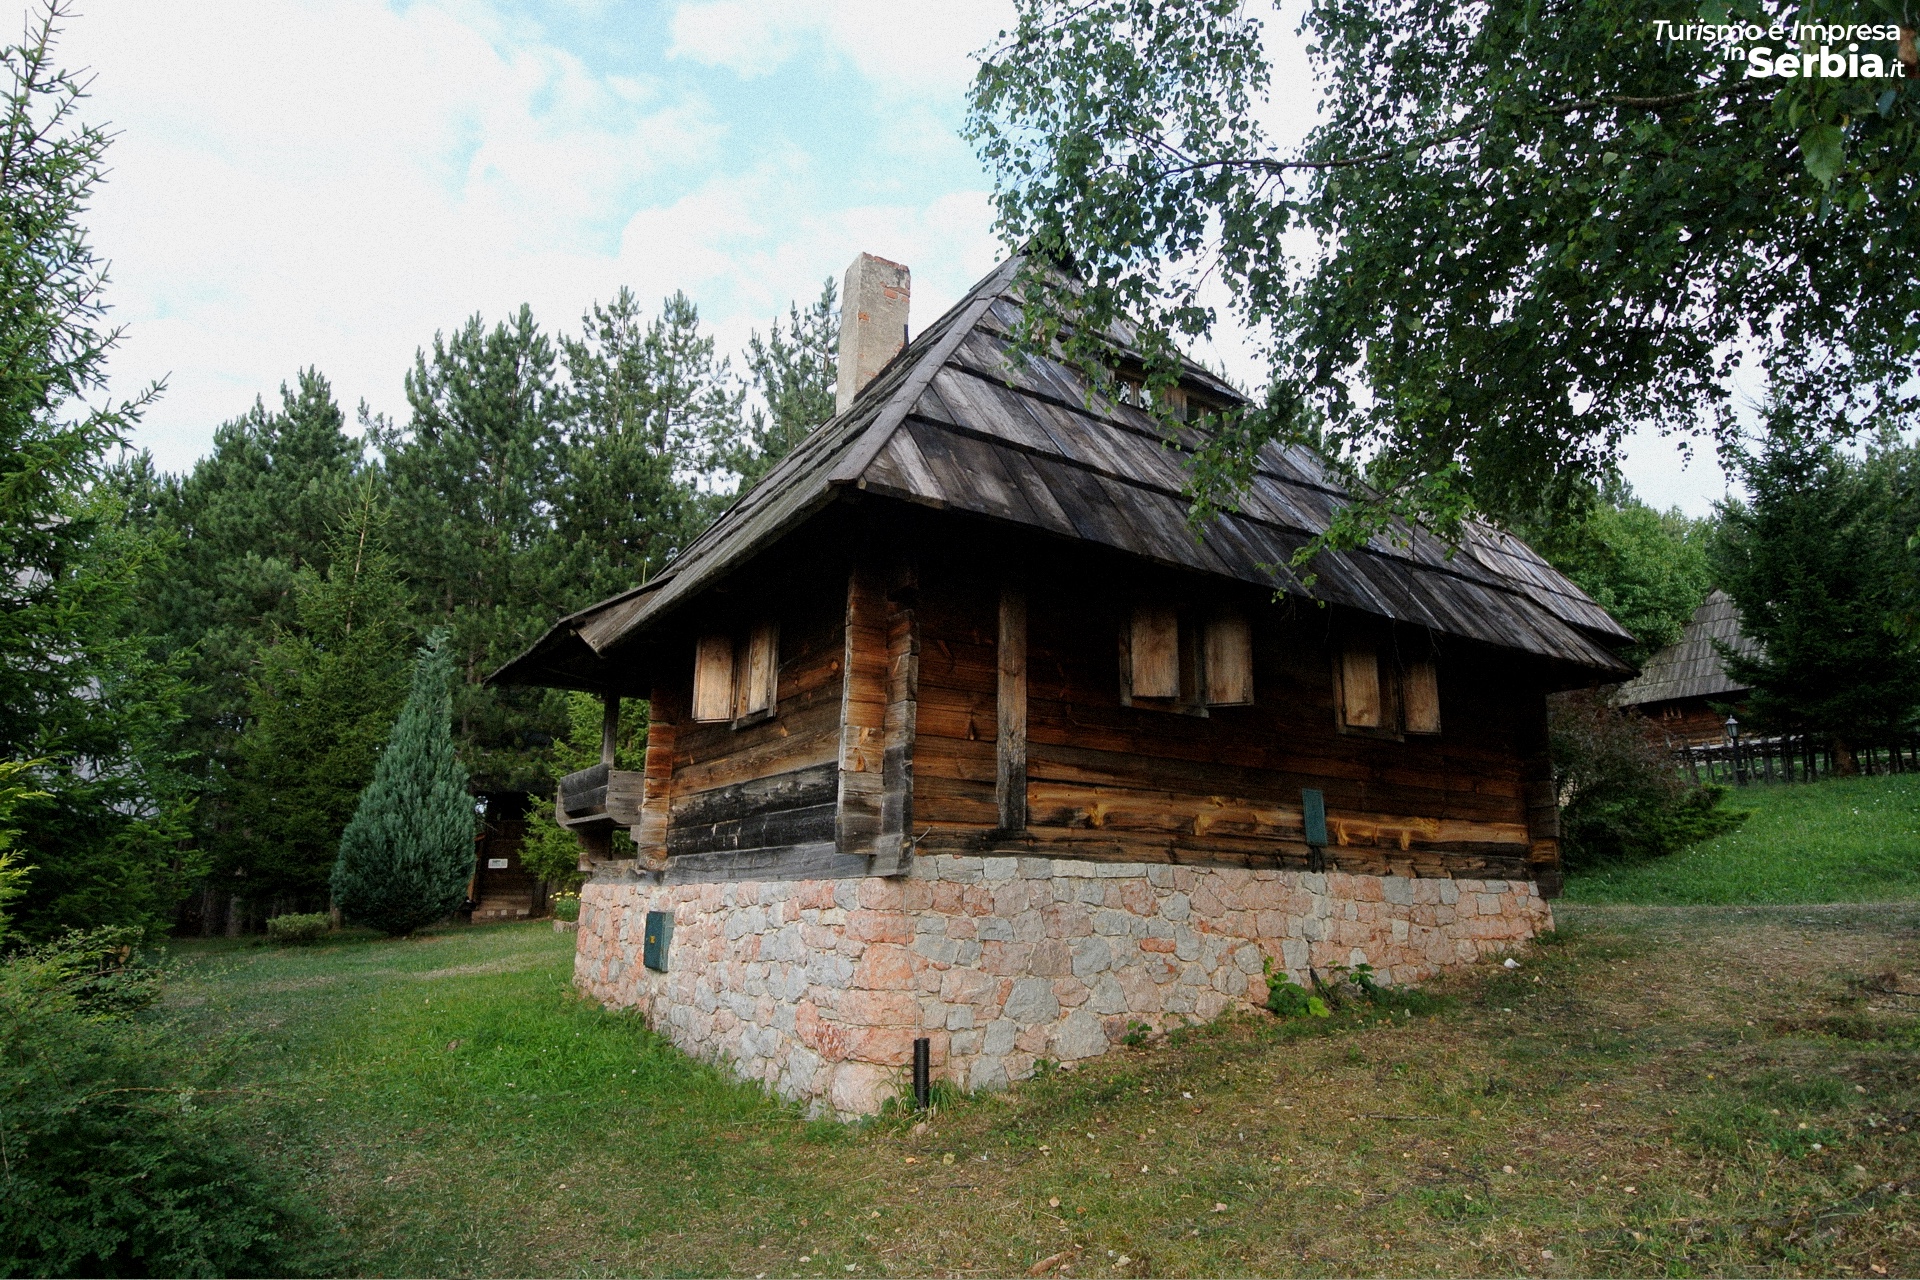 Sirogojno - Museo a cielo aperto Staro Selo